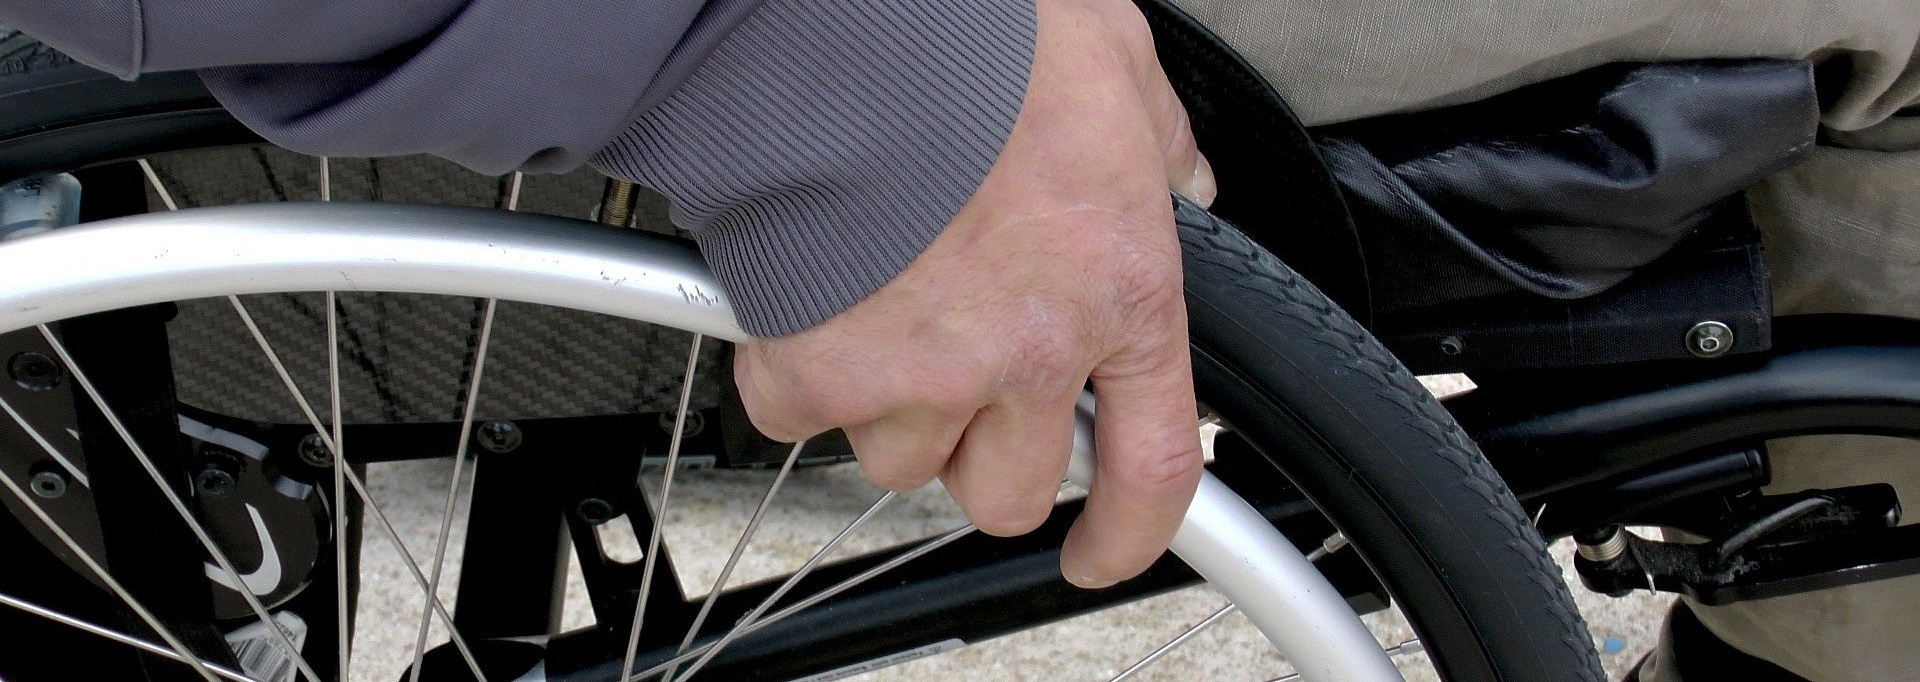 Hand eines Rollstuhlfahrers am Reifen